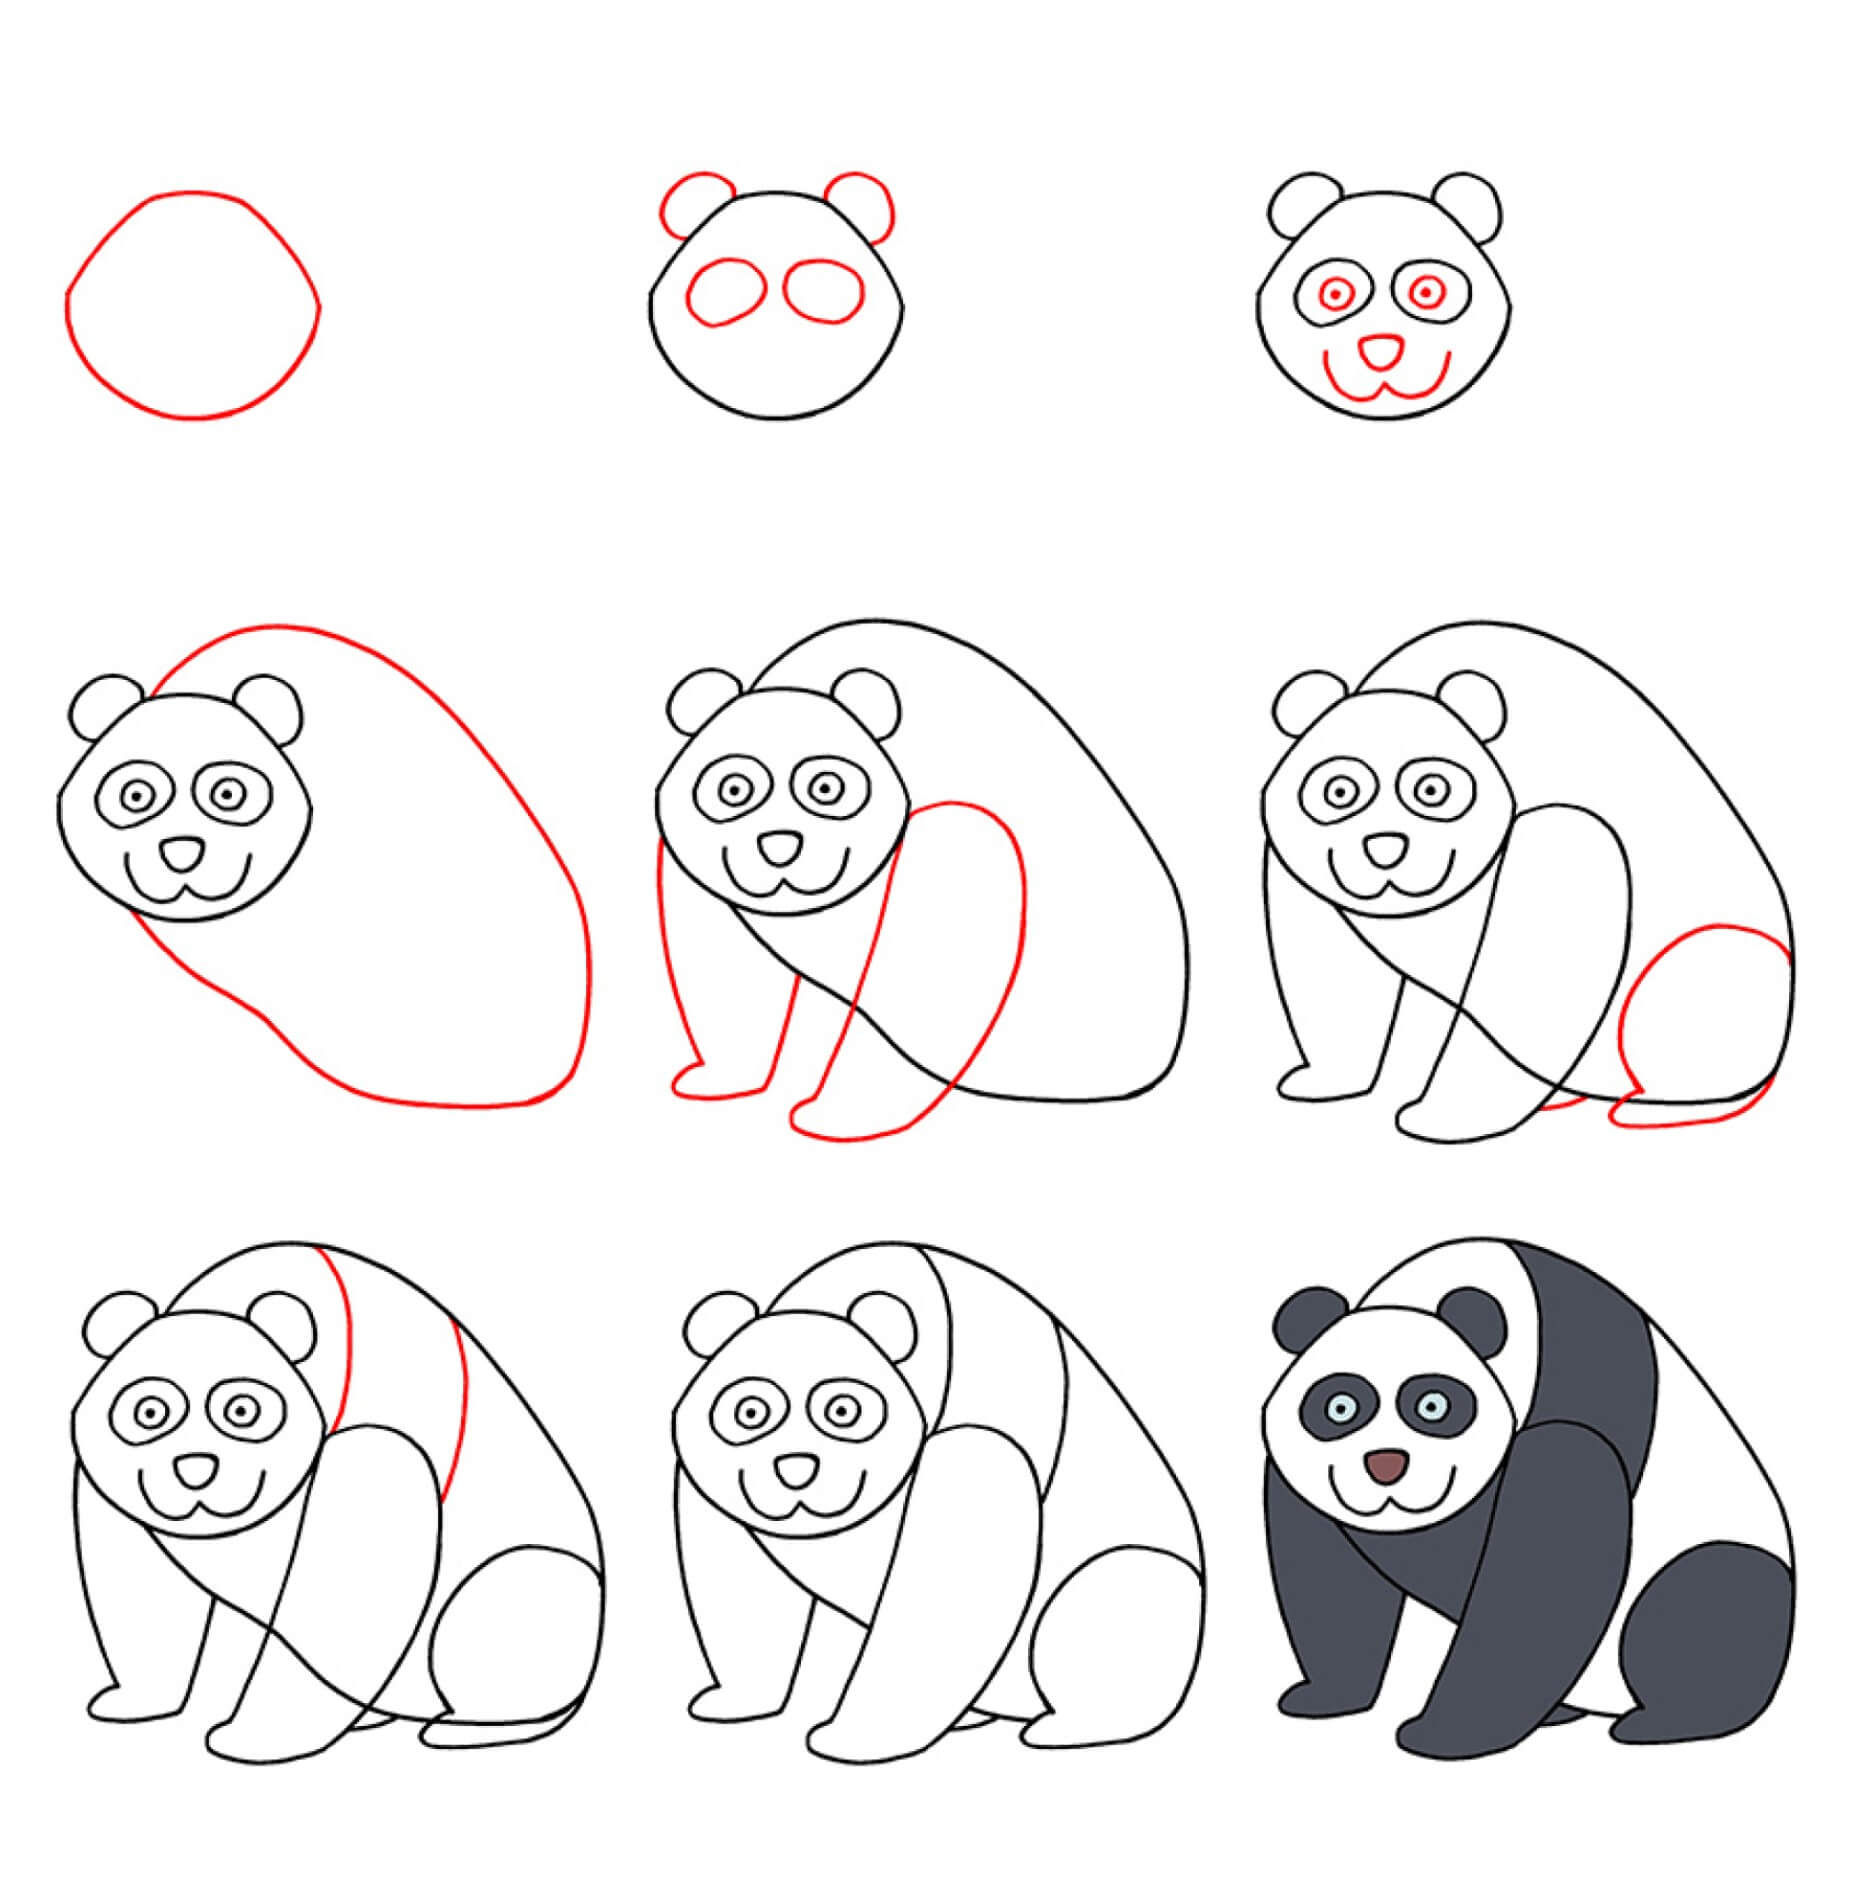 Panda bear idea (19) Drawing Ideas